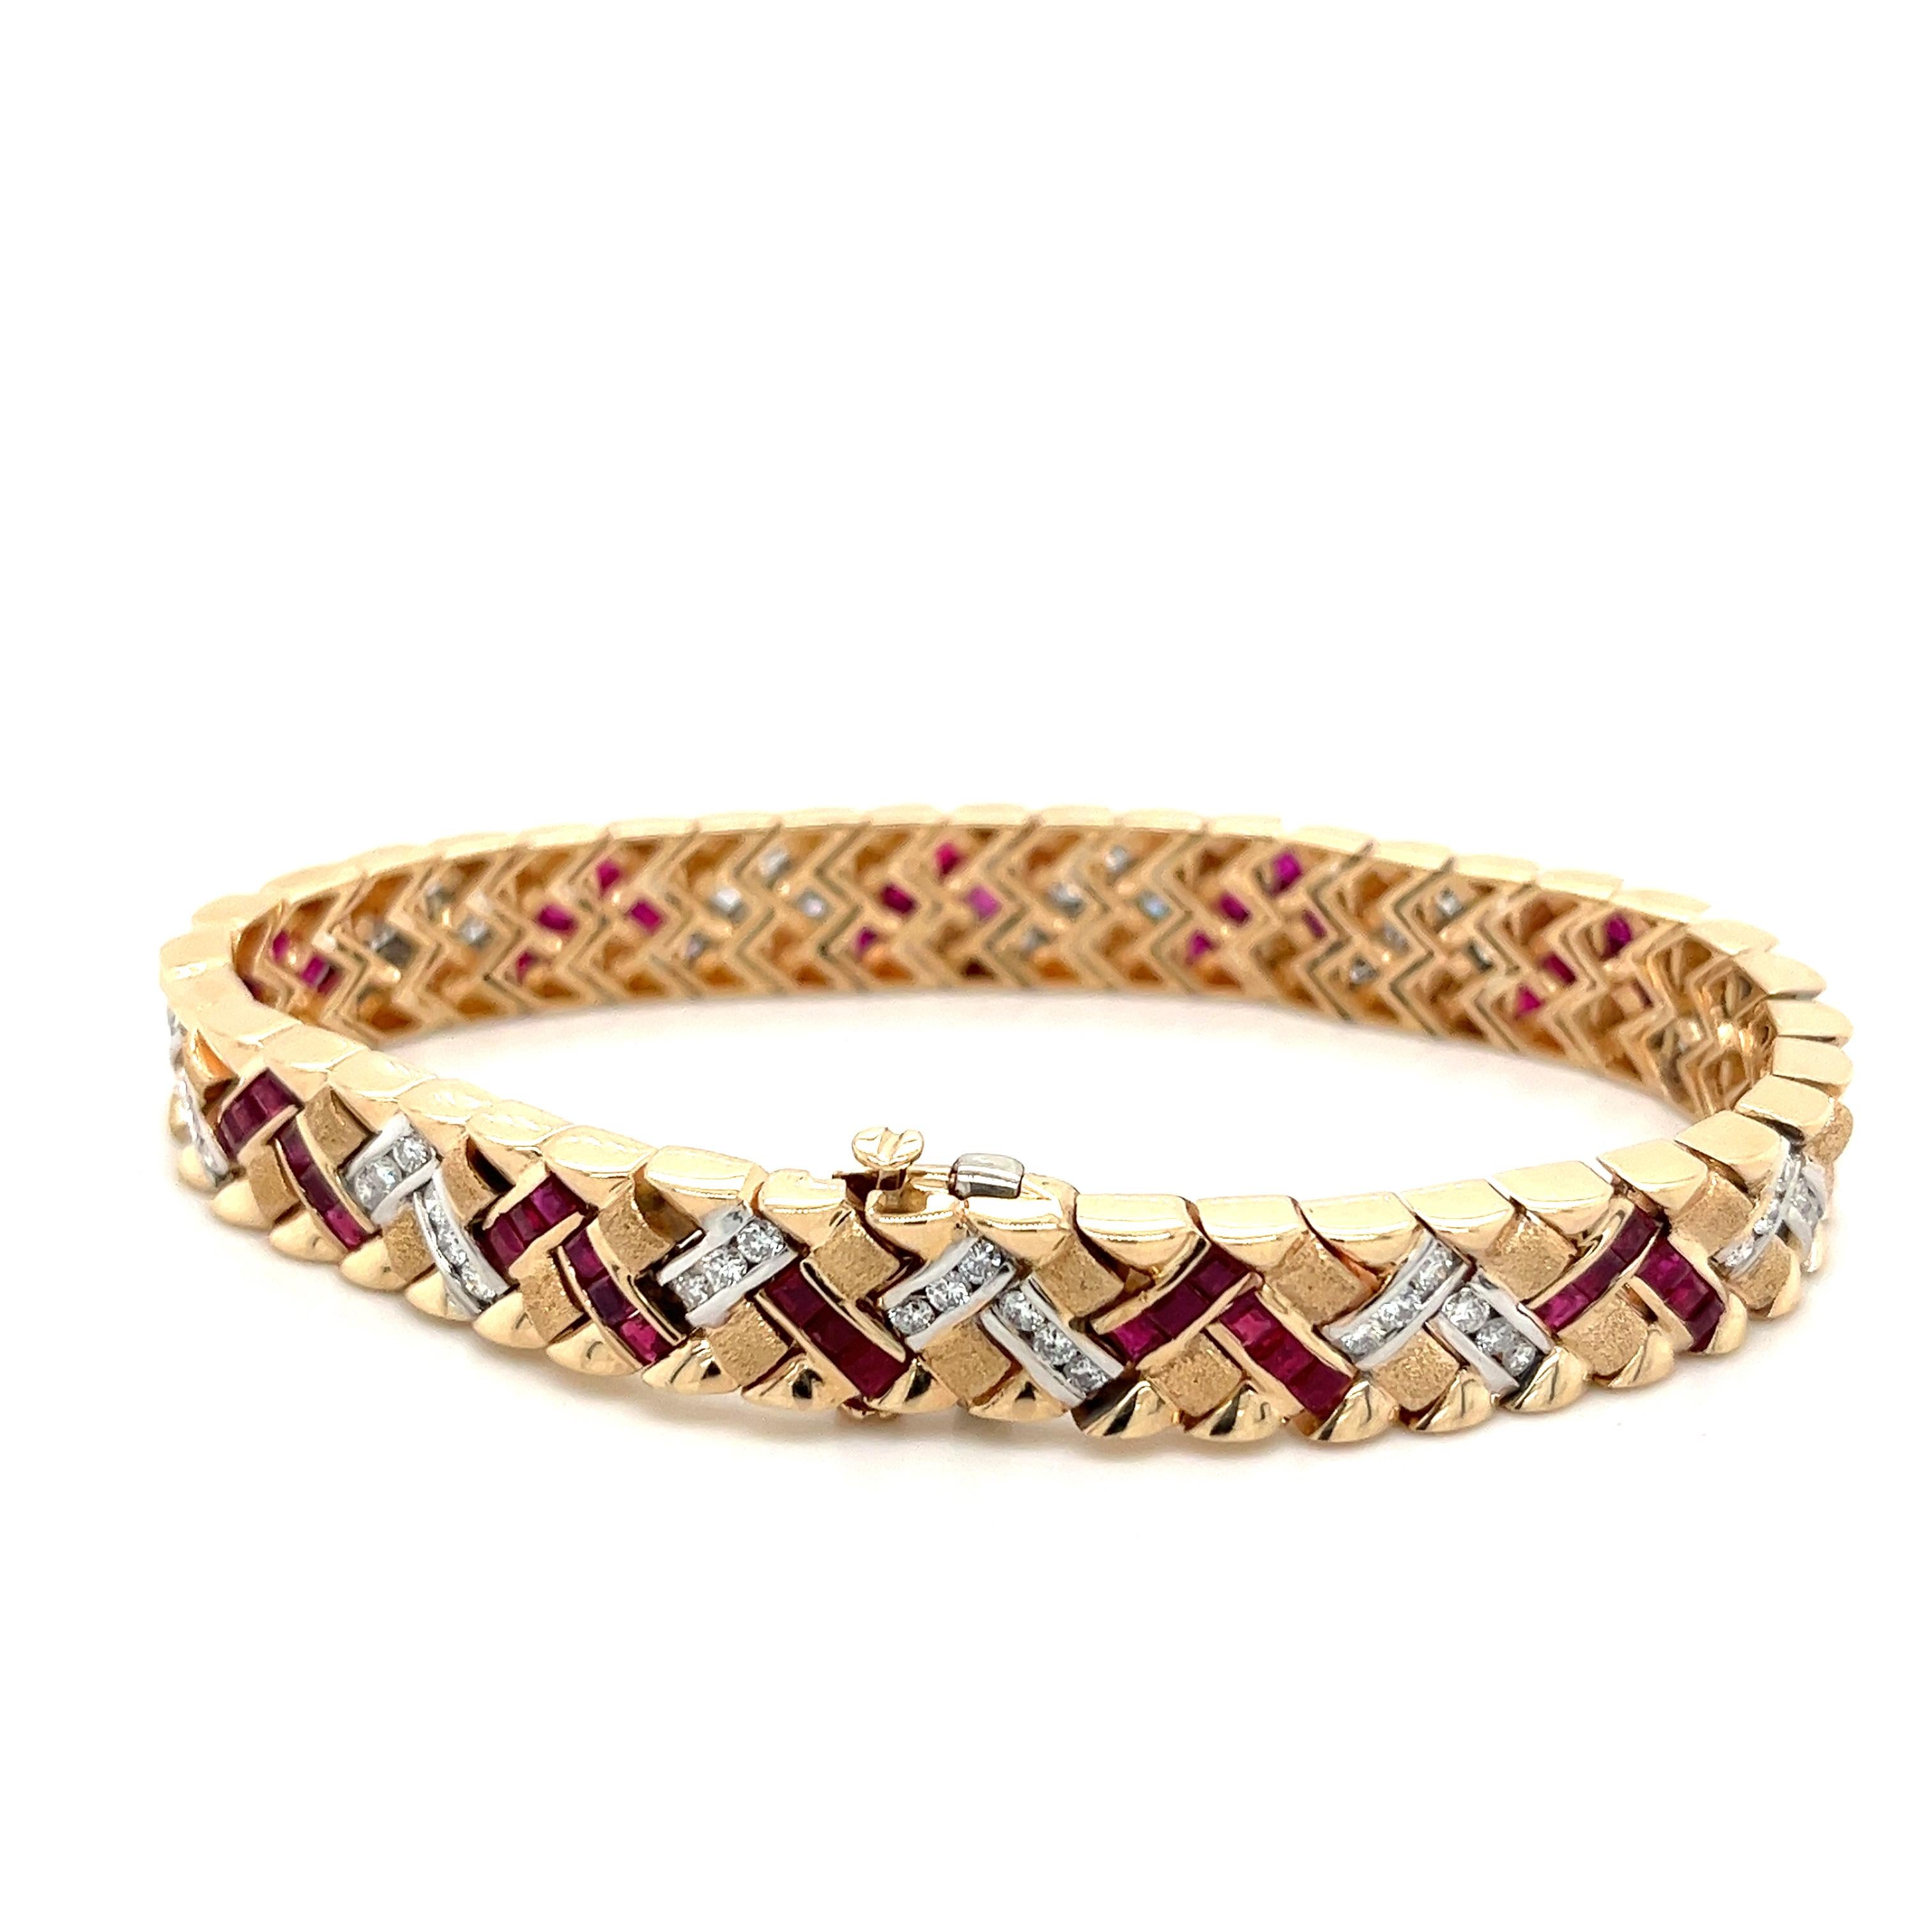 Art Deco-inspiriertes Armband aus massivem 14-karätigem Gelbgold, besetzt mit 126 natürlichen Rubinen und Diamanten. 

Dieses Armband ist ein Meisterwerk im Vintage-Stil - ein einzigartiges Stück mit dem typischen symmetrischen Art-Déco-Muster.